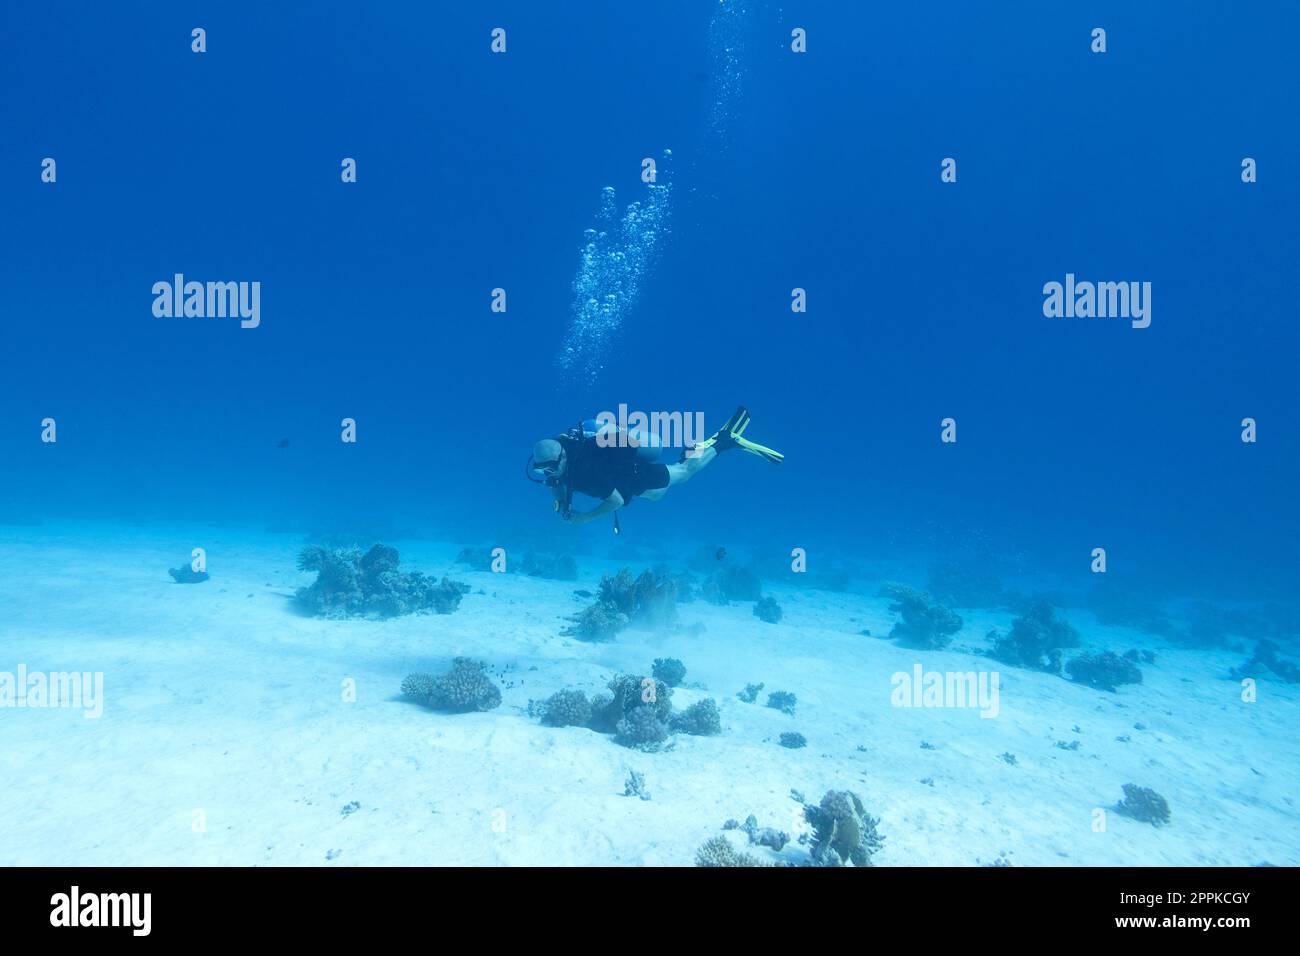 Singolo subacqueo sopra una barriera corallina, bolle d'aria, landcape sottomarino Foto Stock